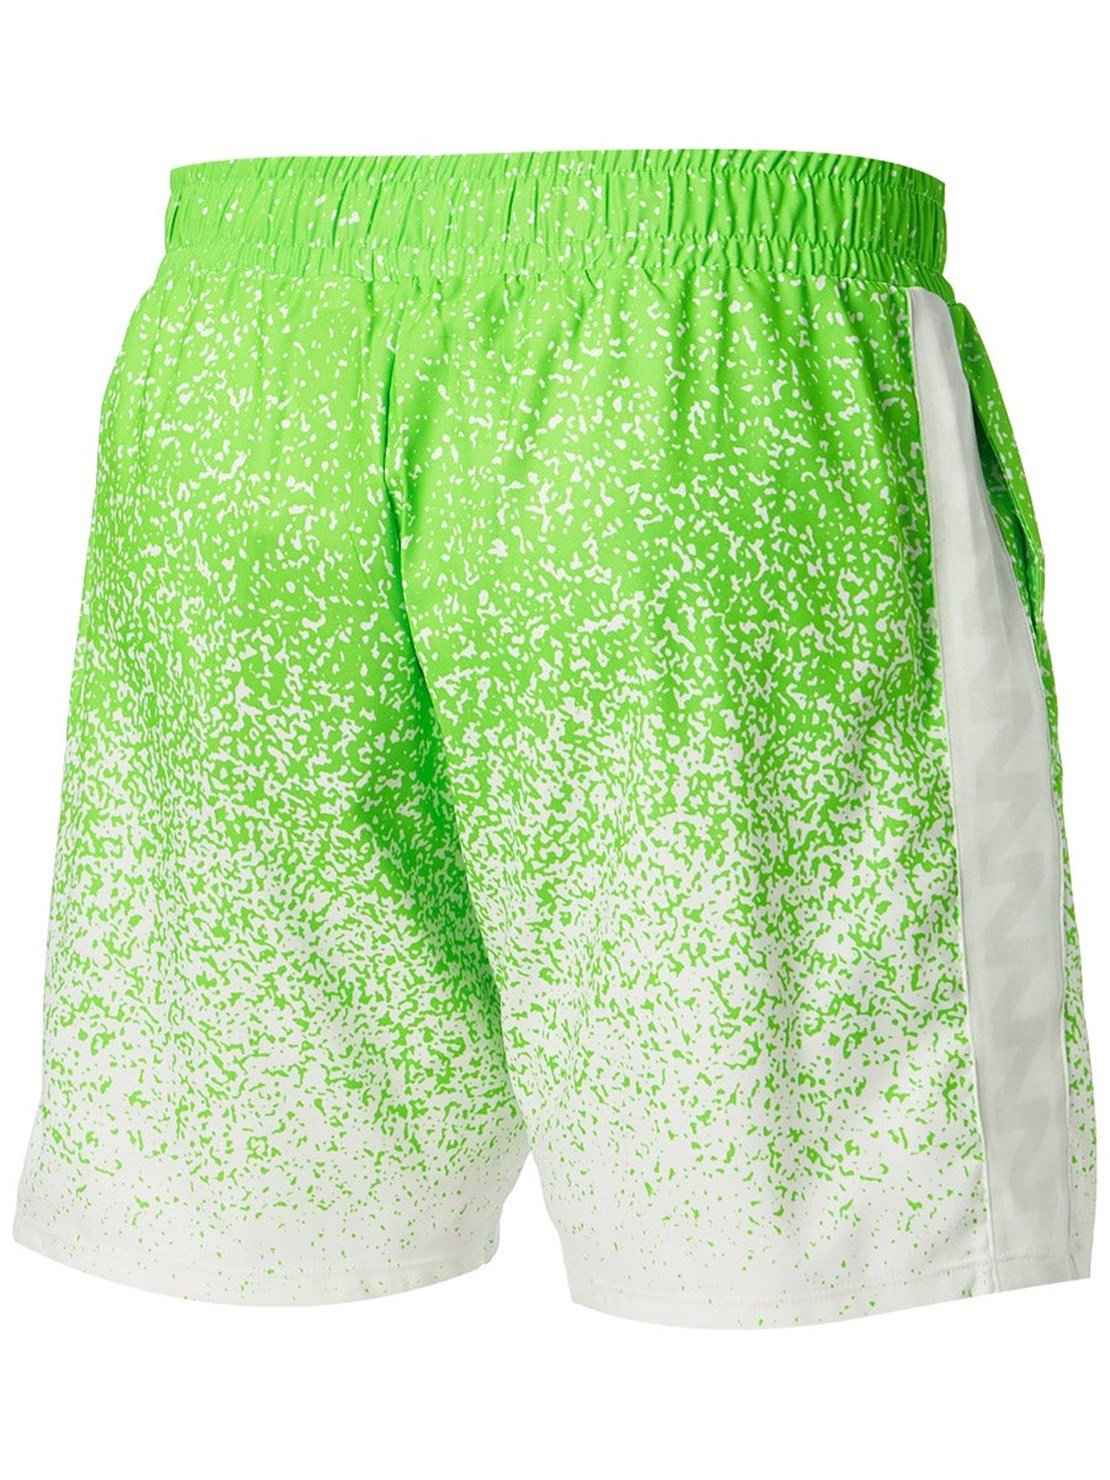 Nike Dri-Fit Rafa Erkek Tenis Şortu | Yeşil / Beyaz | Merit Spor